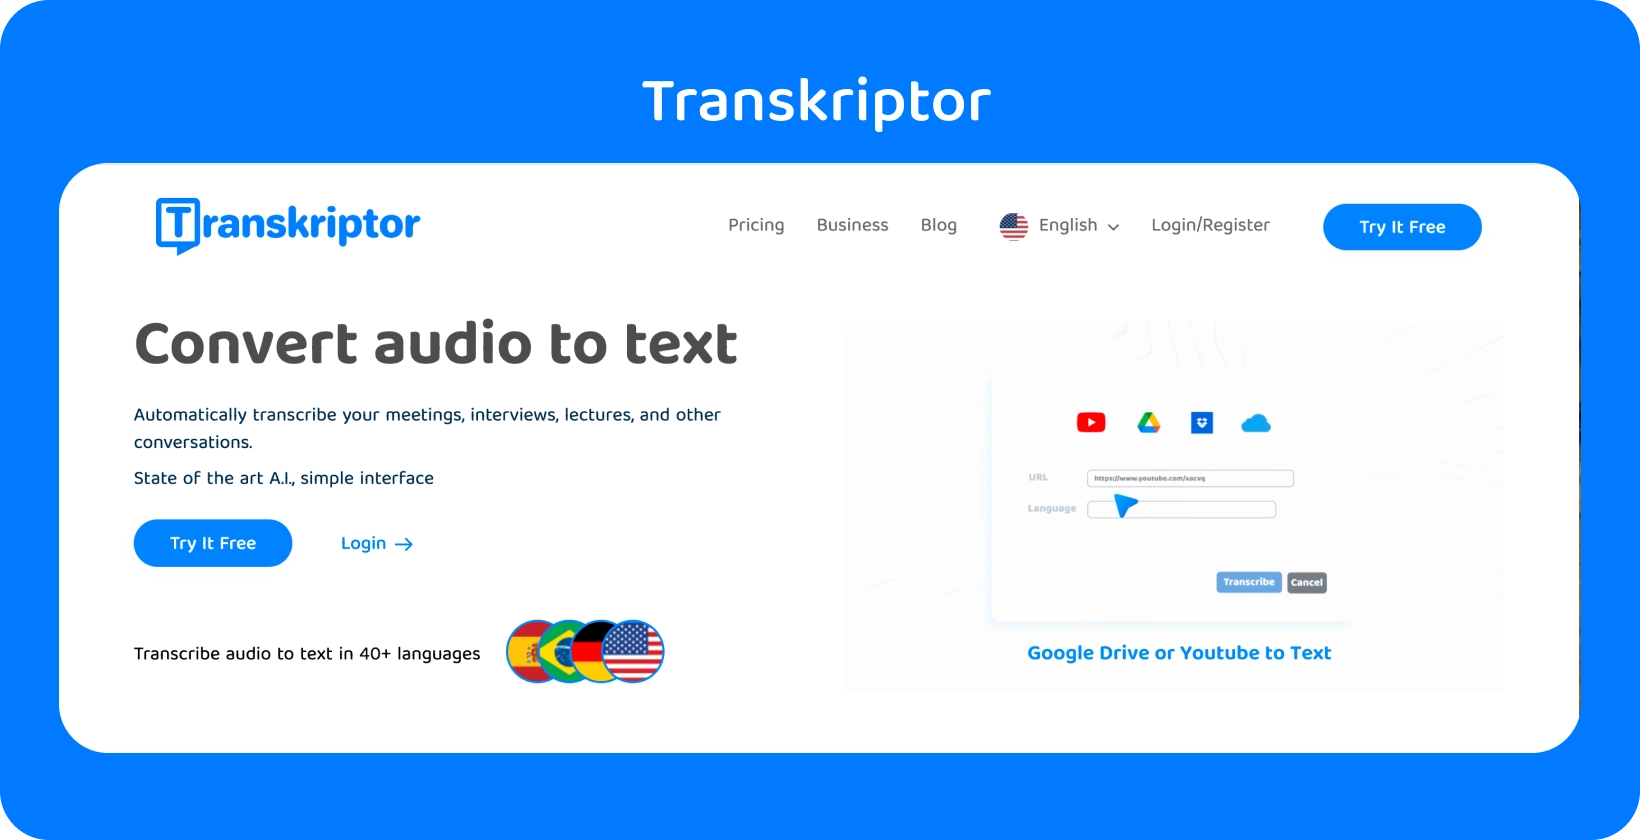 La página web de Transkriptor menciona la función 'Convertir audio a texto', lista para una fácil transcripción.